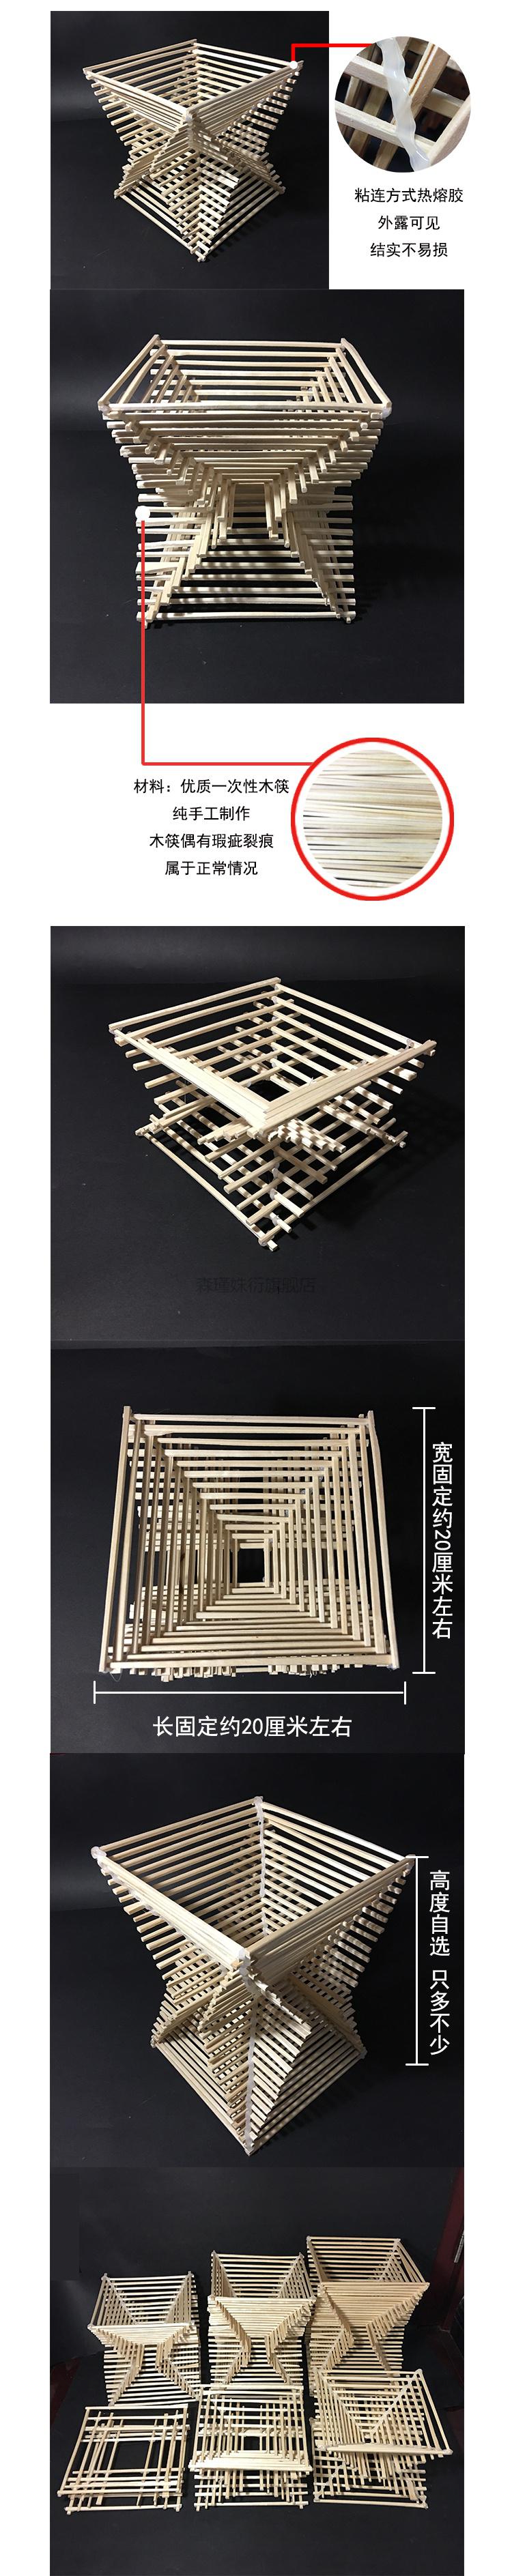 木条结构设计作品图片